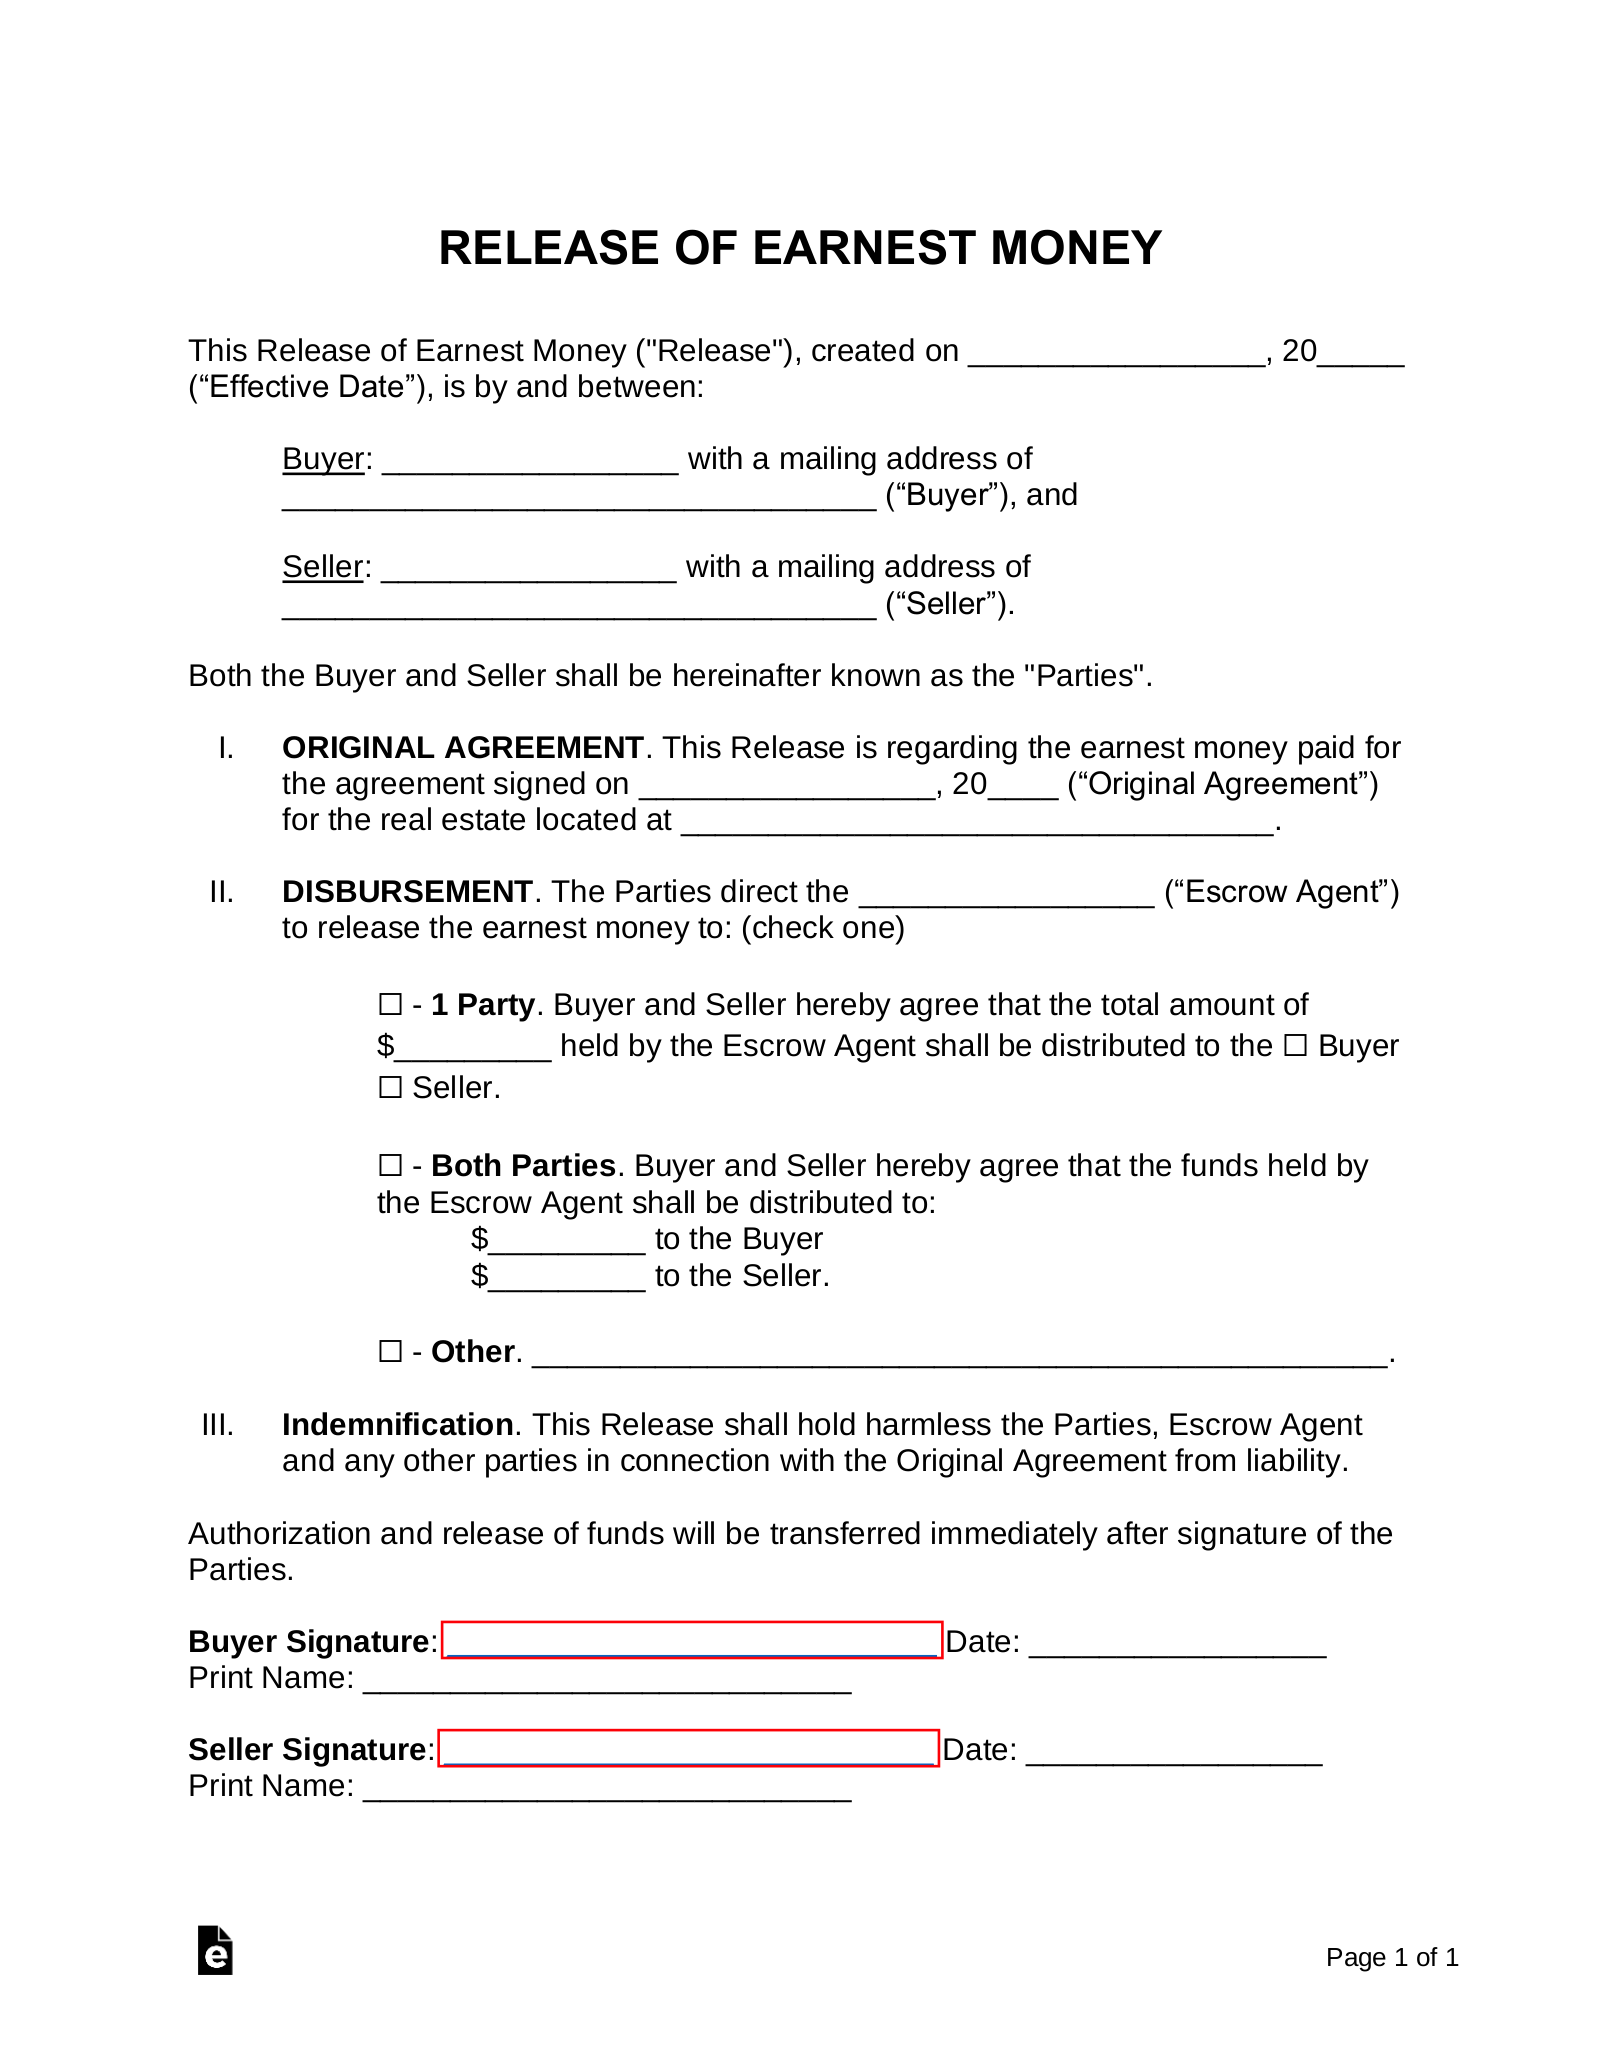 Release of Earnest Money Form